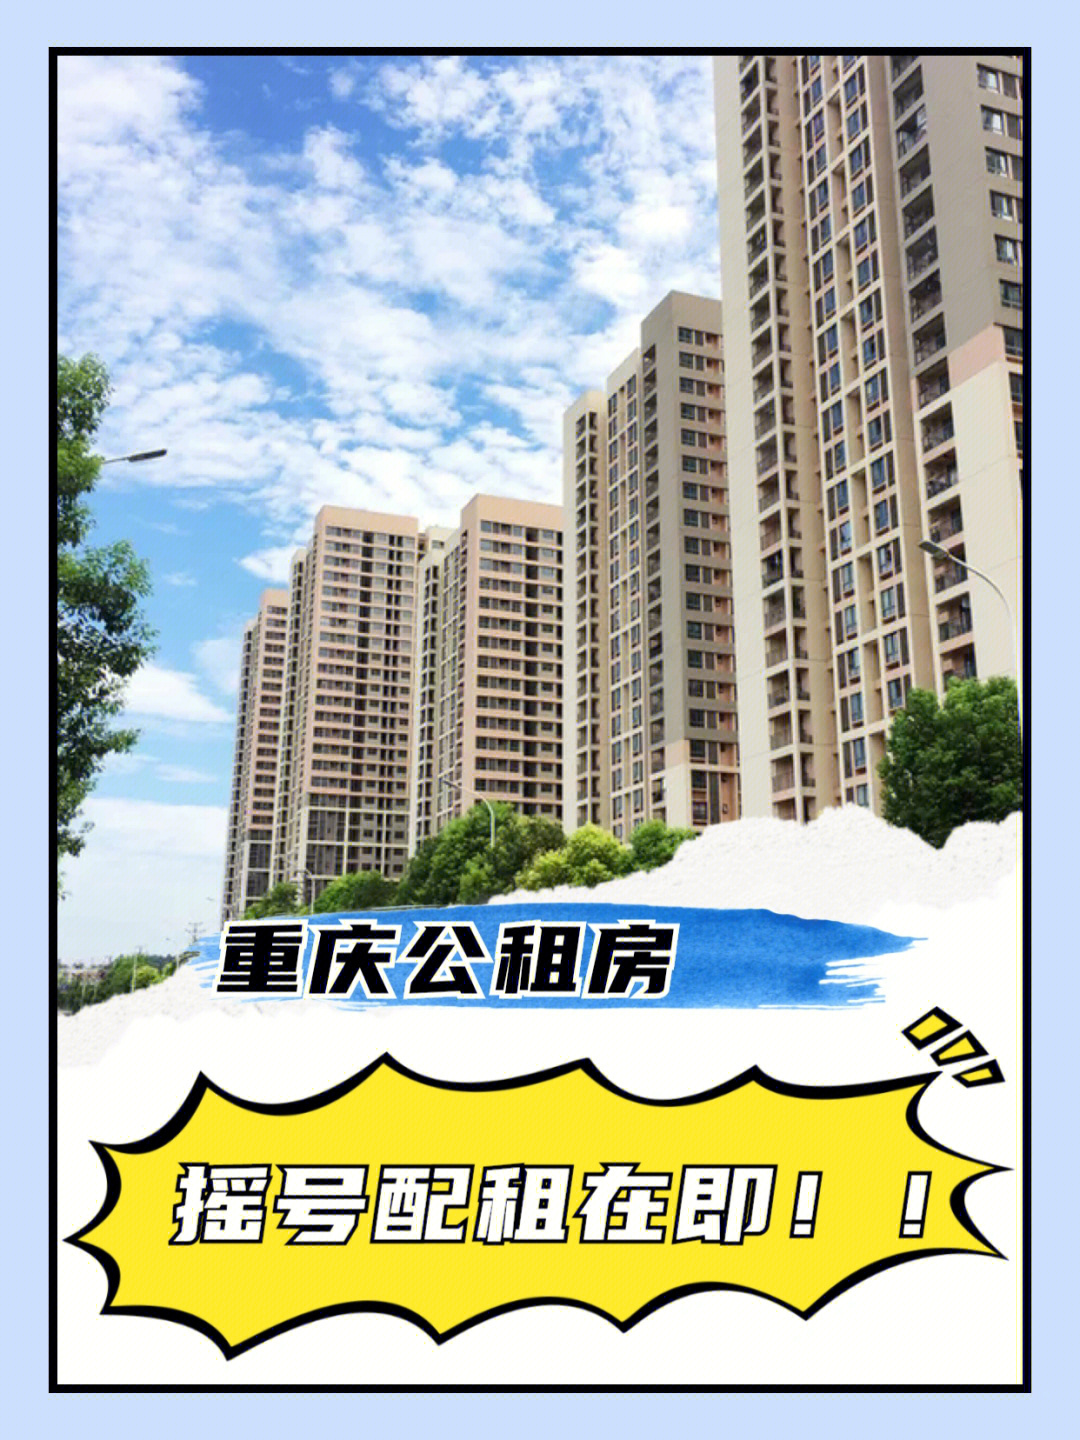 重庆第37批公租房摇号配租在即60这里申请